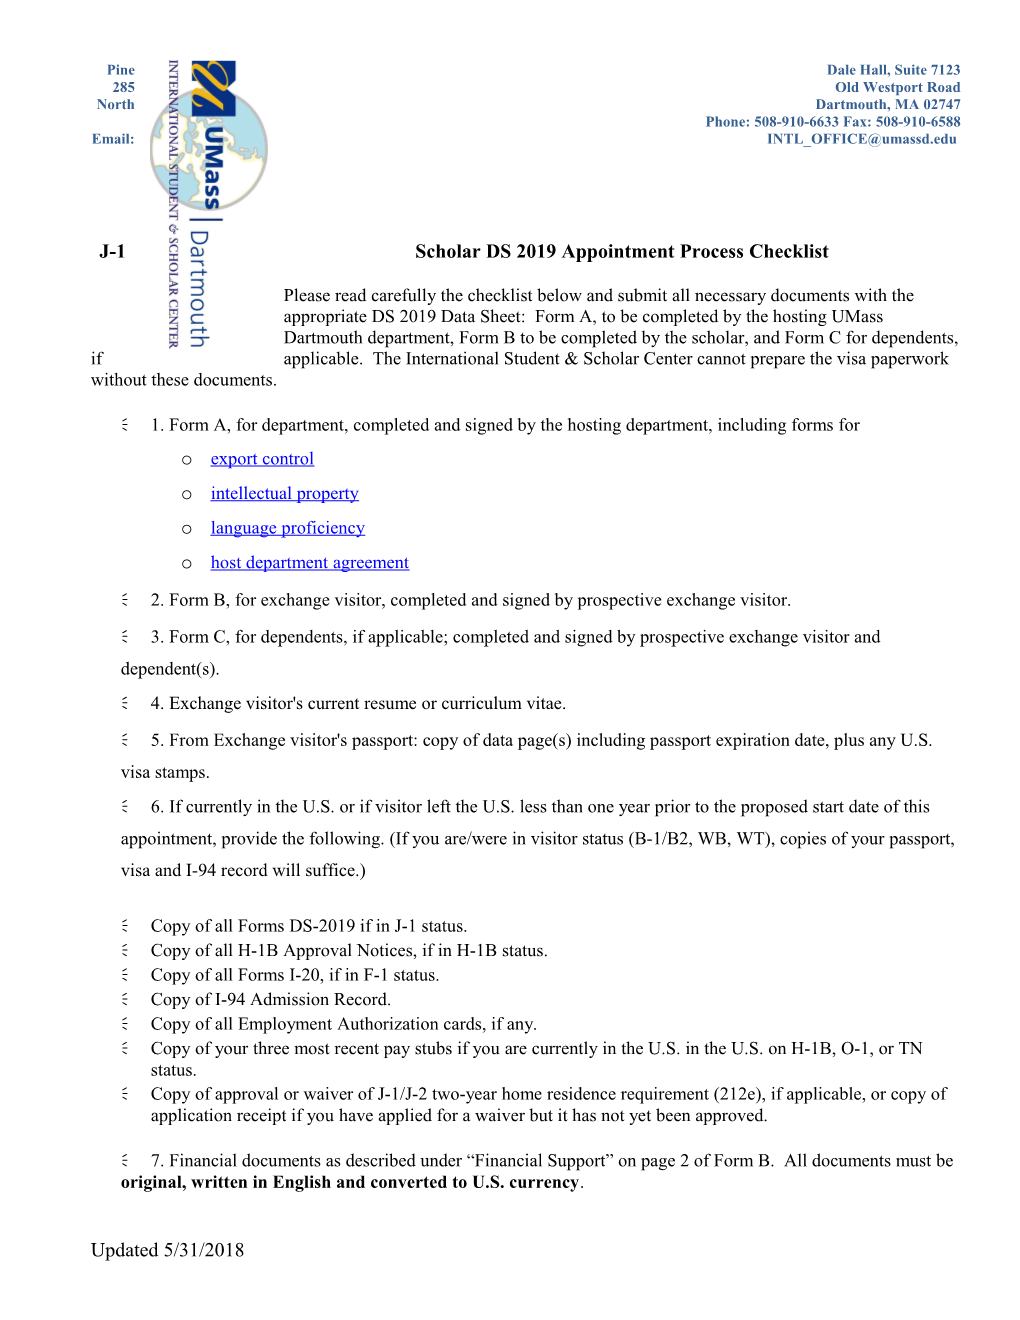 J-1 Scholar DS 2019 Appointment Process Checklist